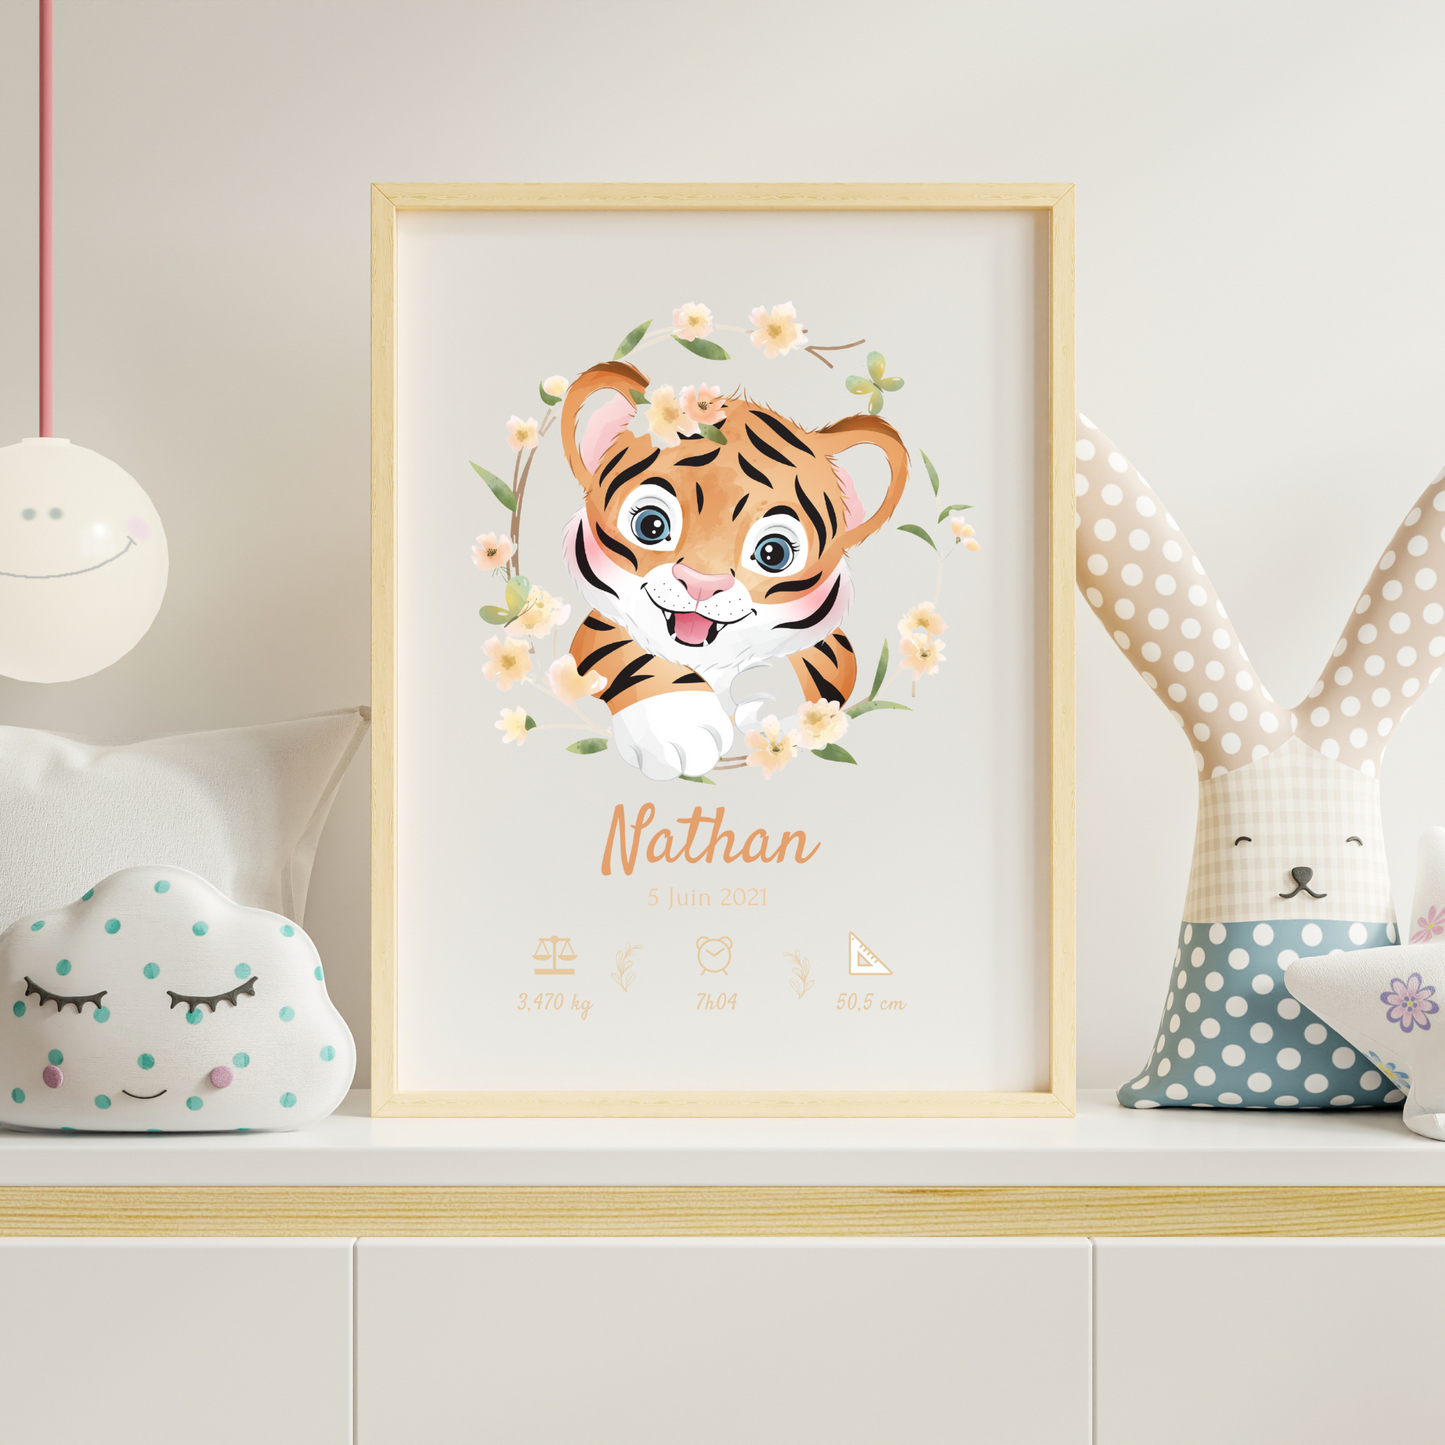 Affiche de naissance tigre - affiche bébé à personnaliser - cadeau naissance - décoration chambre enfant  par Le Temps des Paillettes